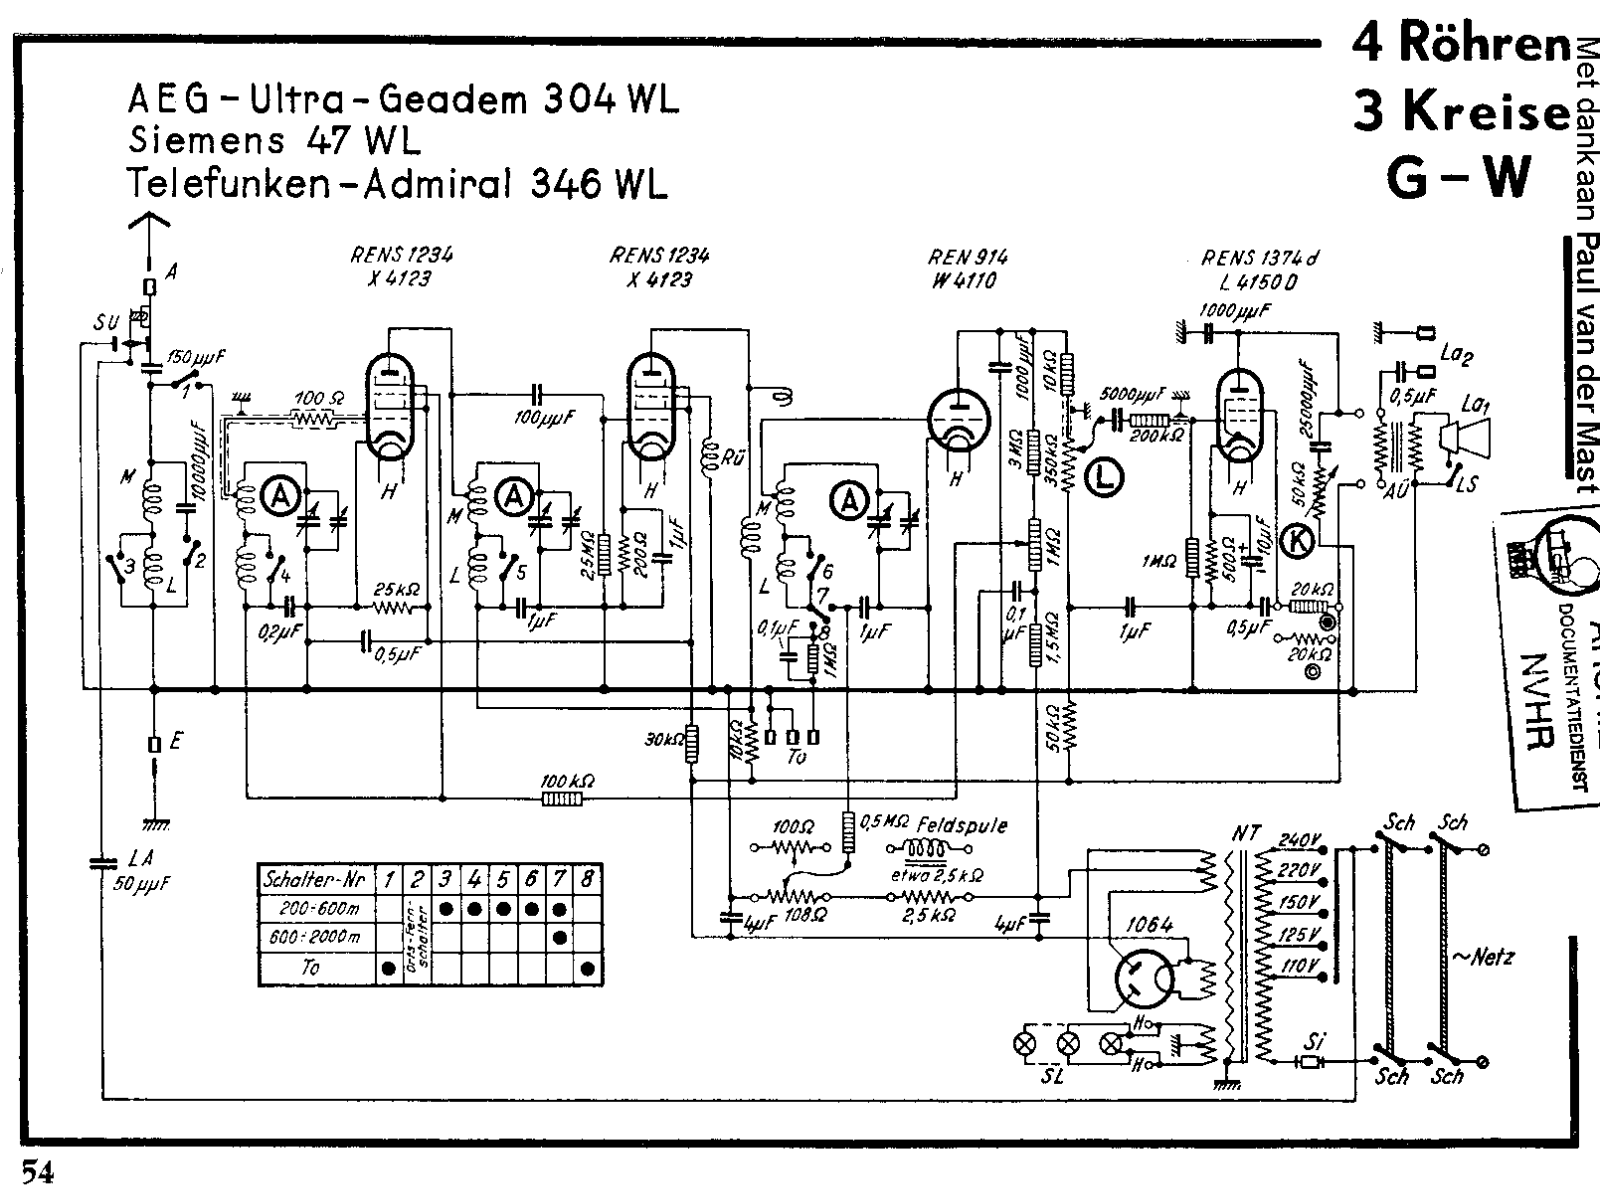 AEG 304wl schematic